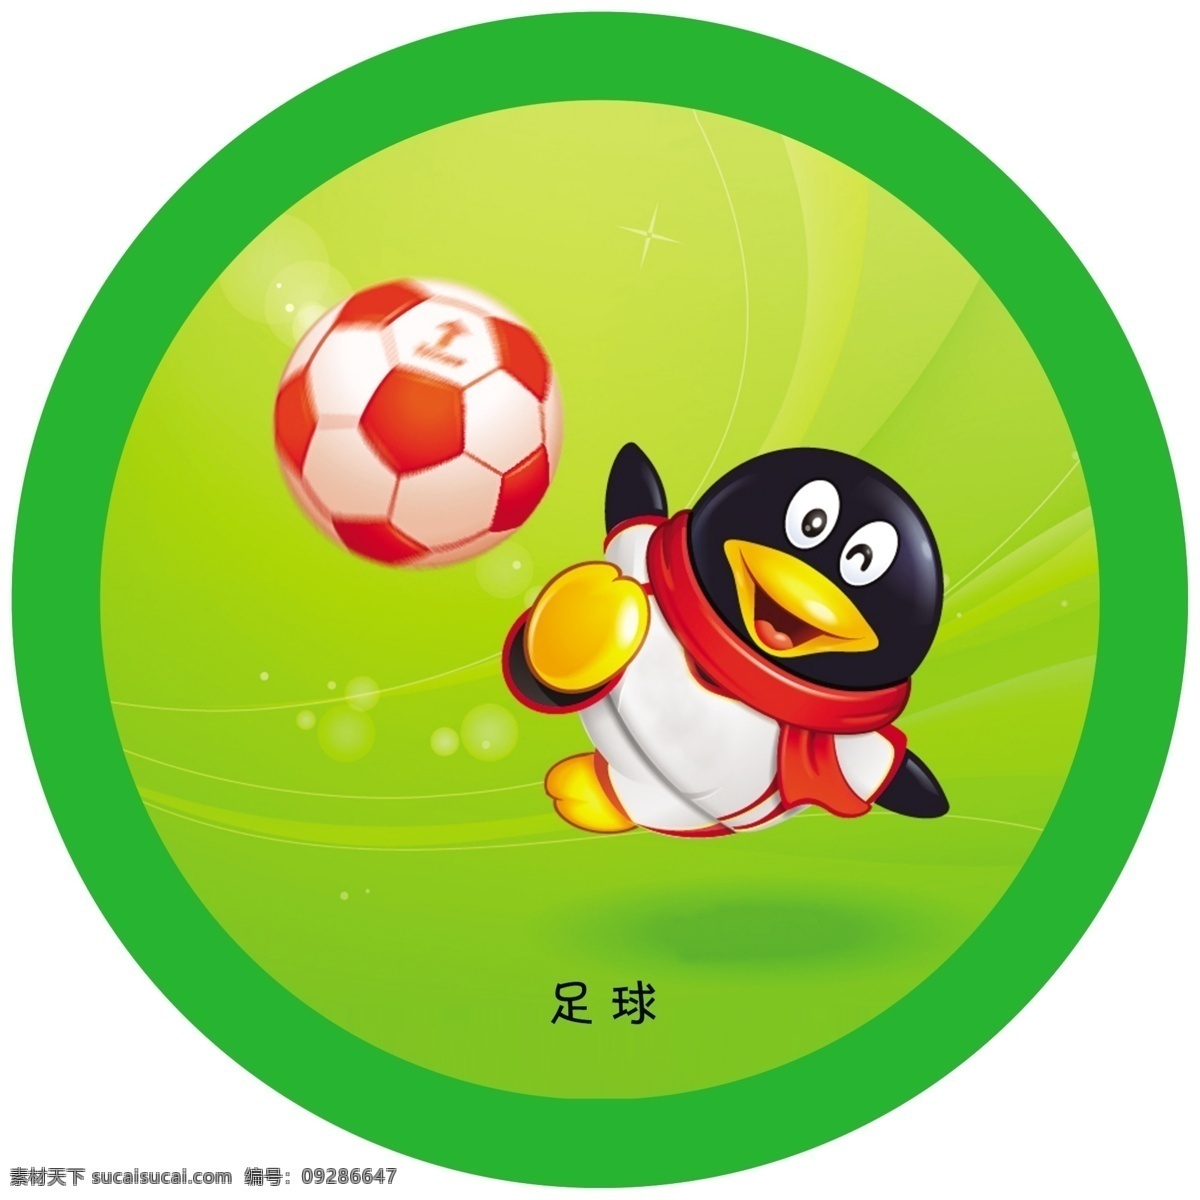 qq 广告设计模板 绿色 企鹅 球 源文件 运动项目 展板模板 足球 标牌 模板下载 足球标牌 奥运项目 矢量图 日常生活